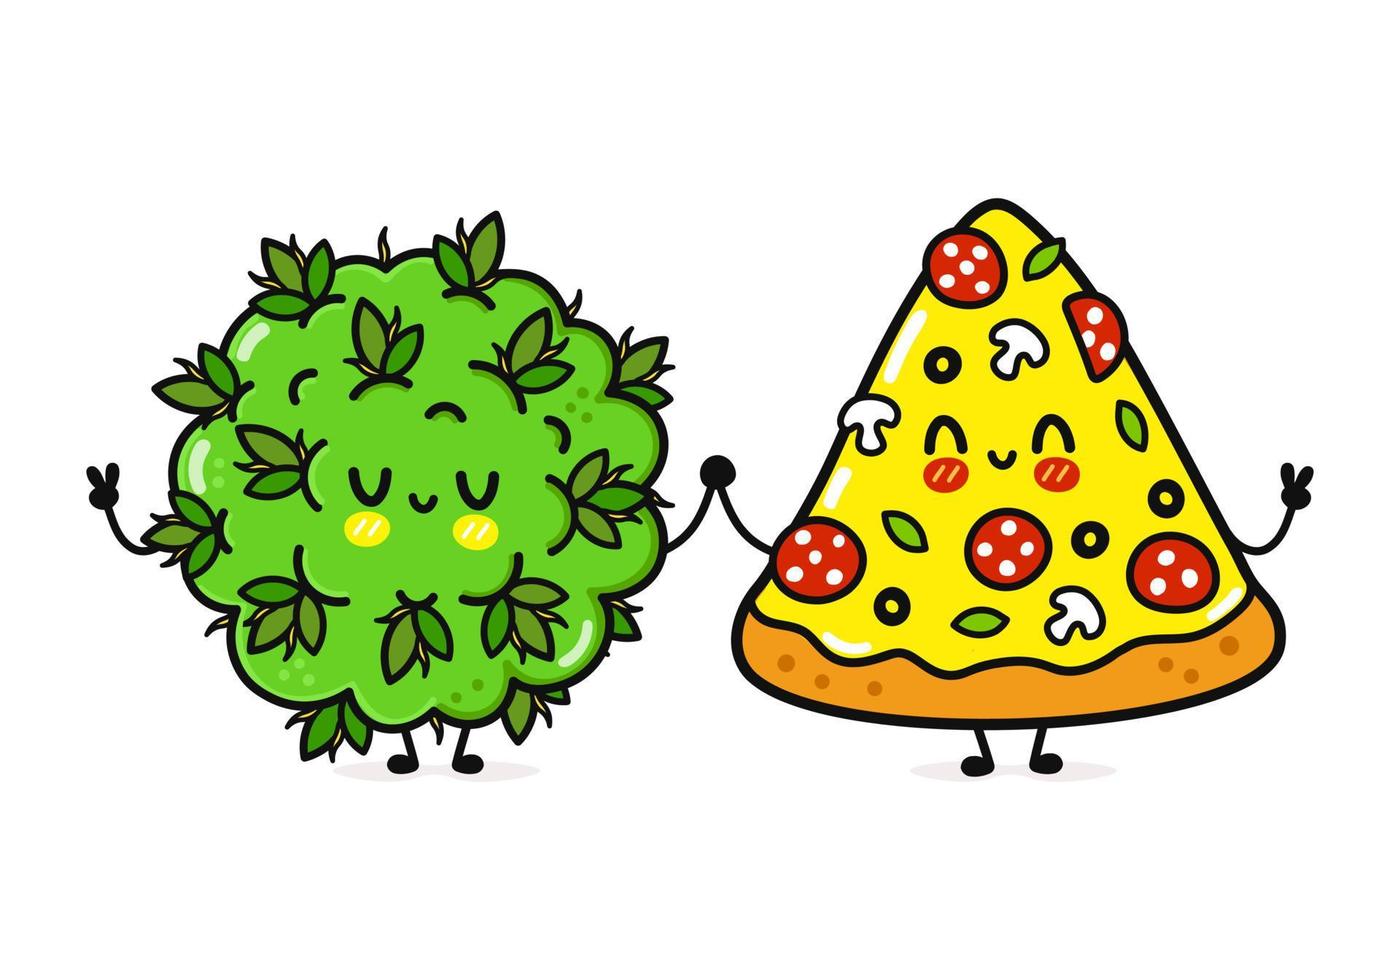 süßer, lustiger, fröhlicher Pizza- und Marihuana-Unkrautknospencharakter. Vektor handgezeichnete kawaii Zeichentrickfiguren, Illustrationssymbol. lustiger Cartoon, glückliche Pizza- und Marihuana-Unkrautknospen-Freunde